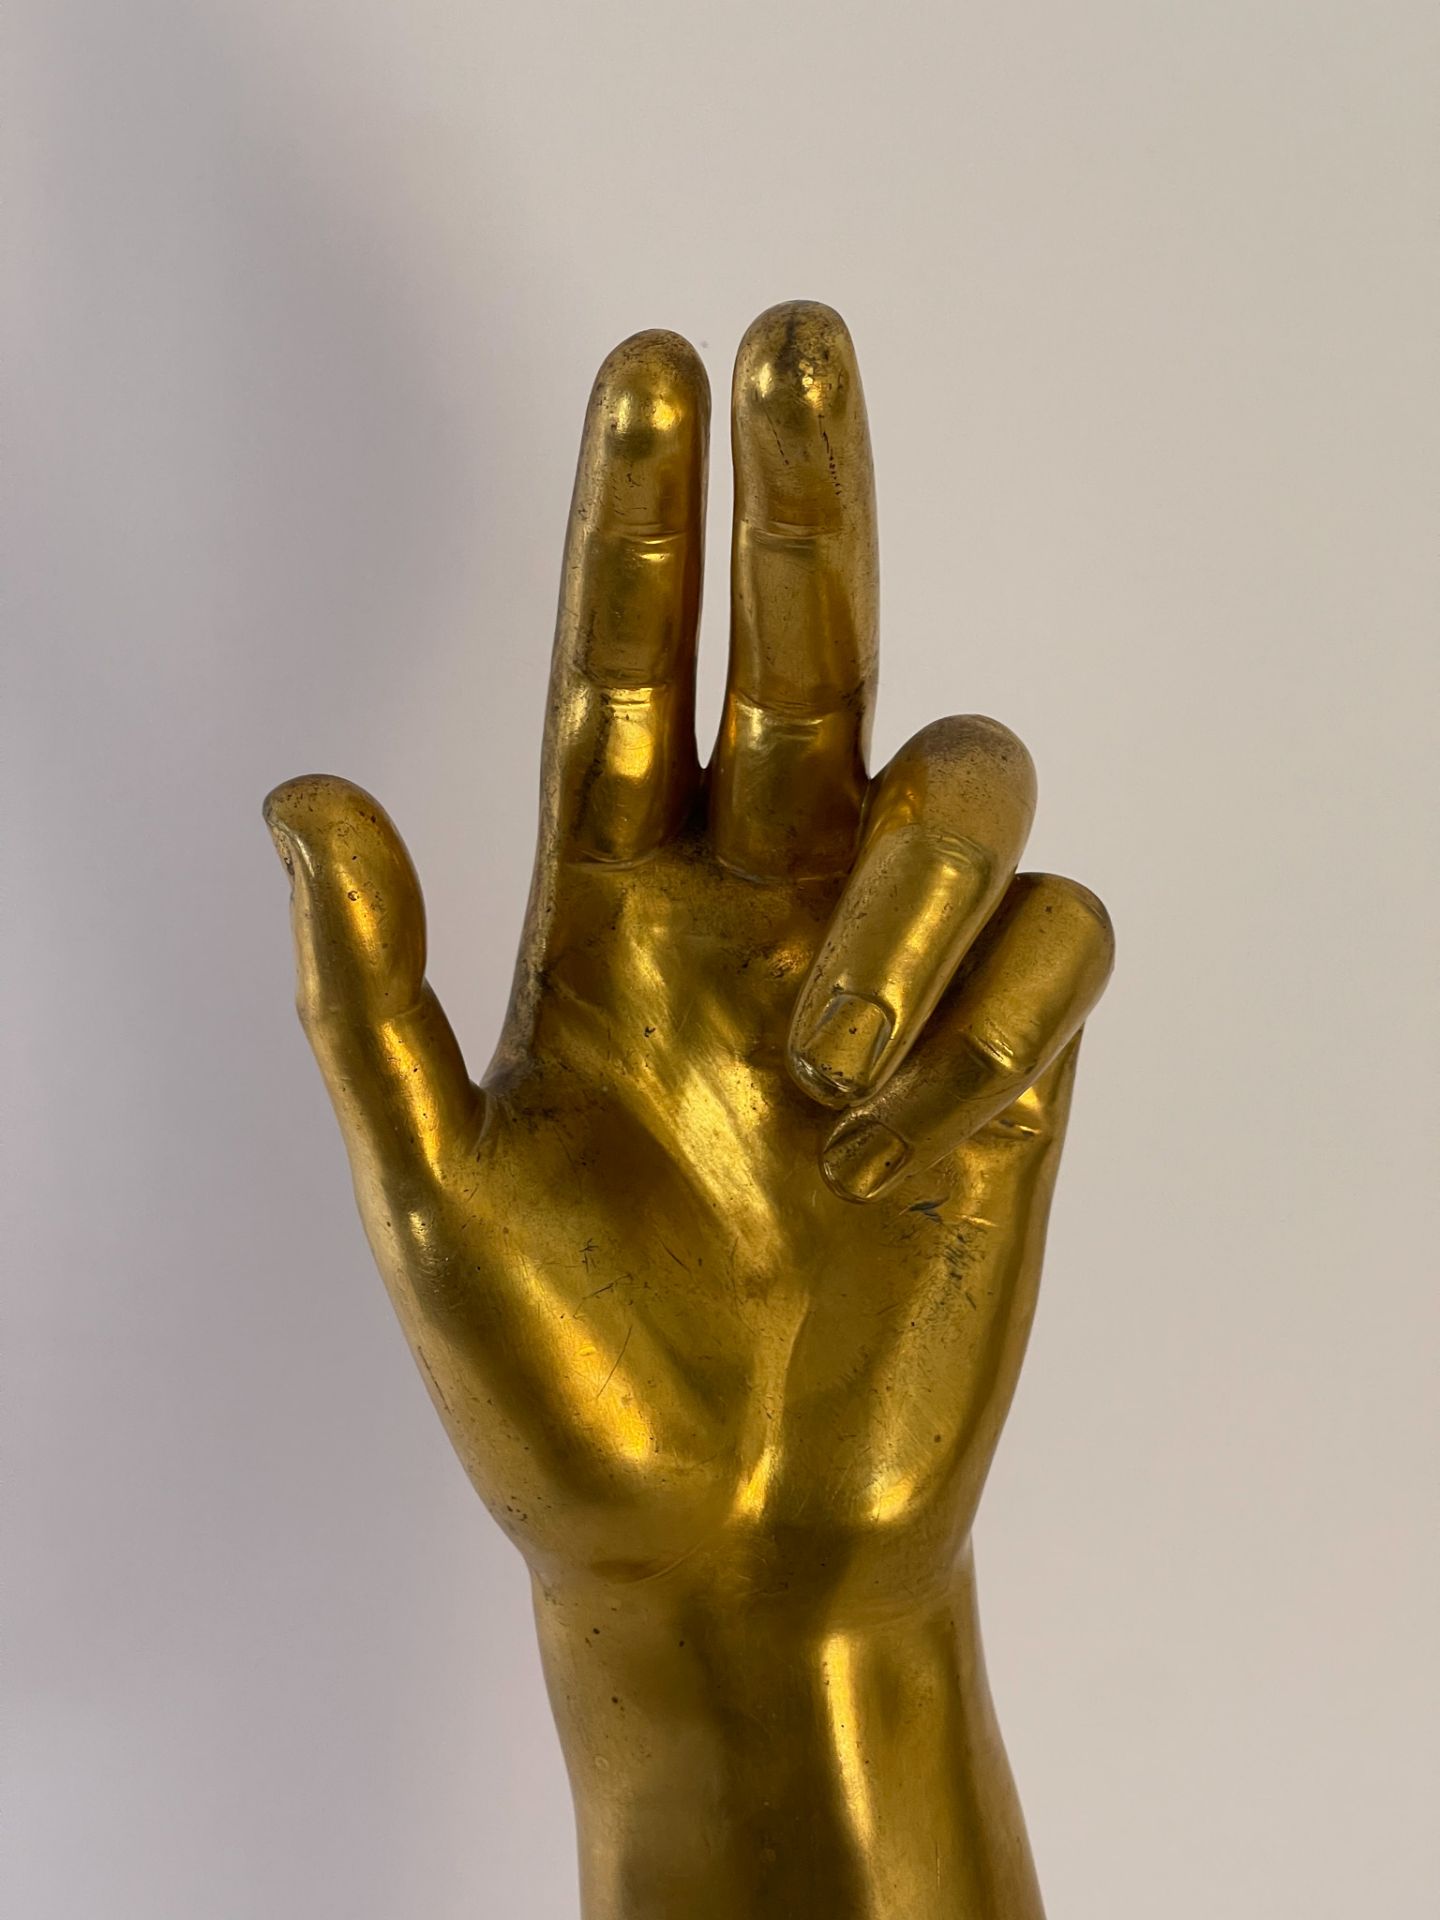 Museumsstück "Arm Reliquar" - Image 4 of 11